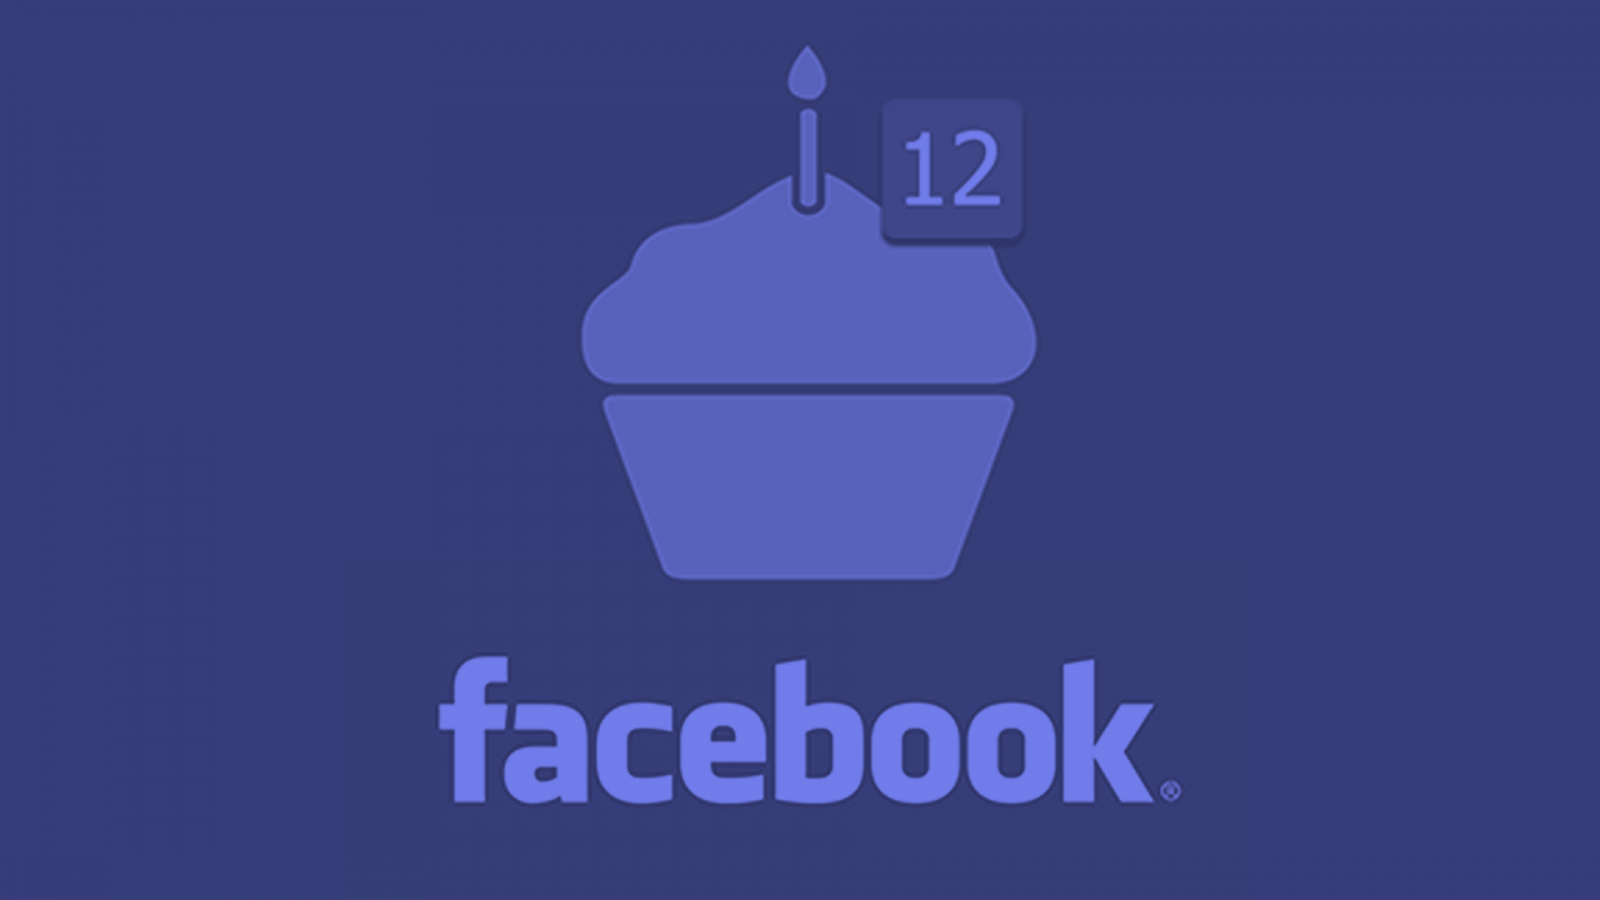 Facebook completa 12 anos em 2016